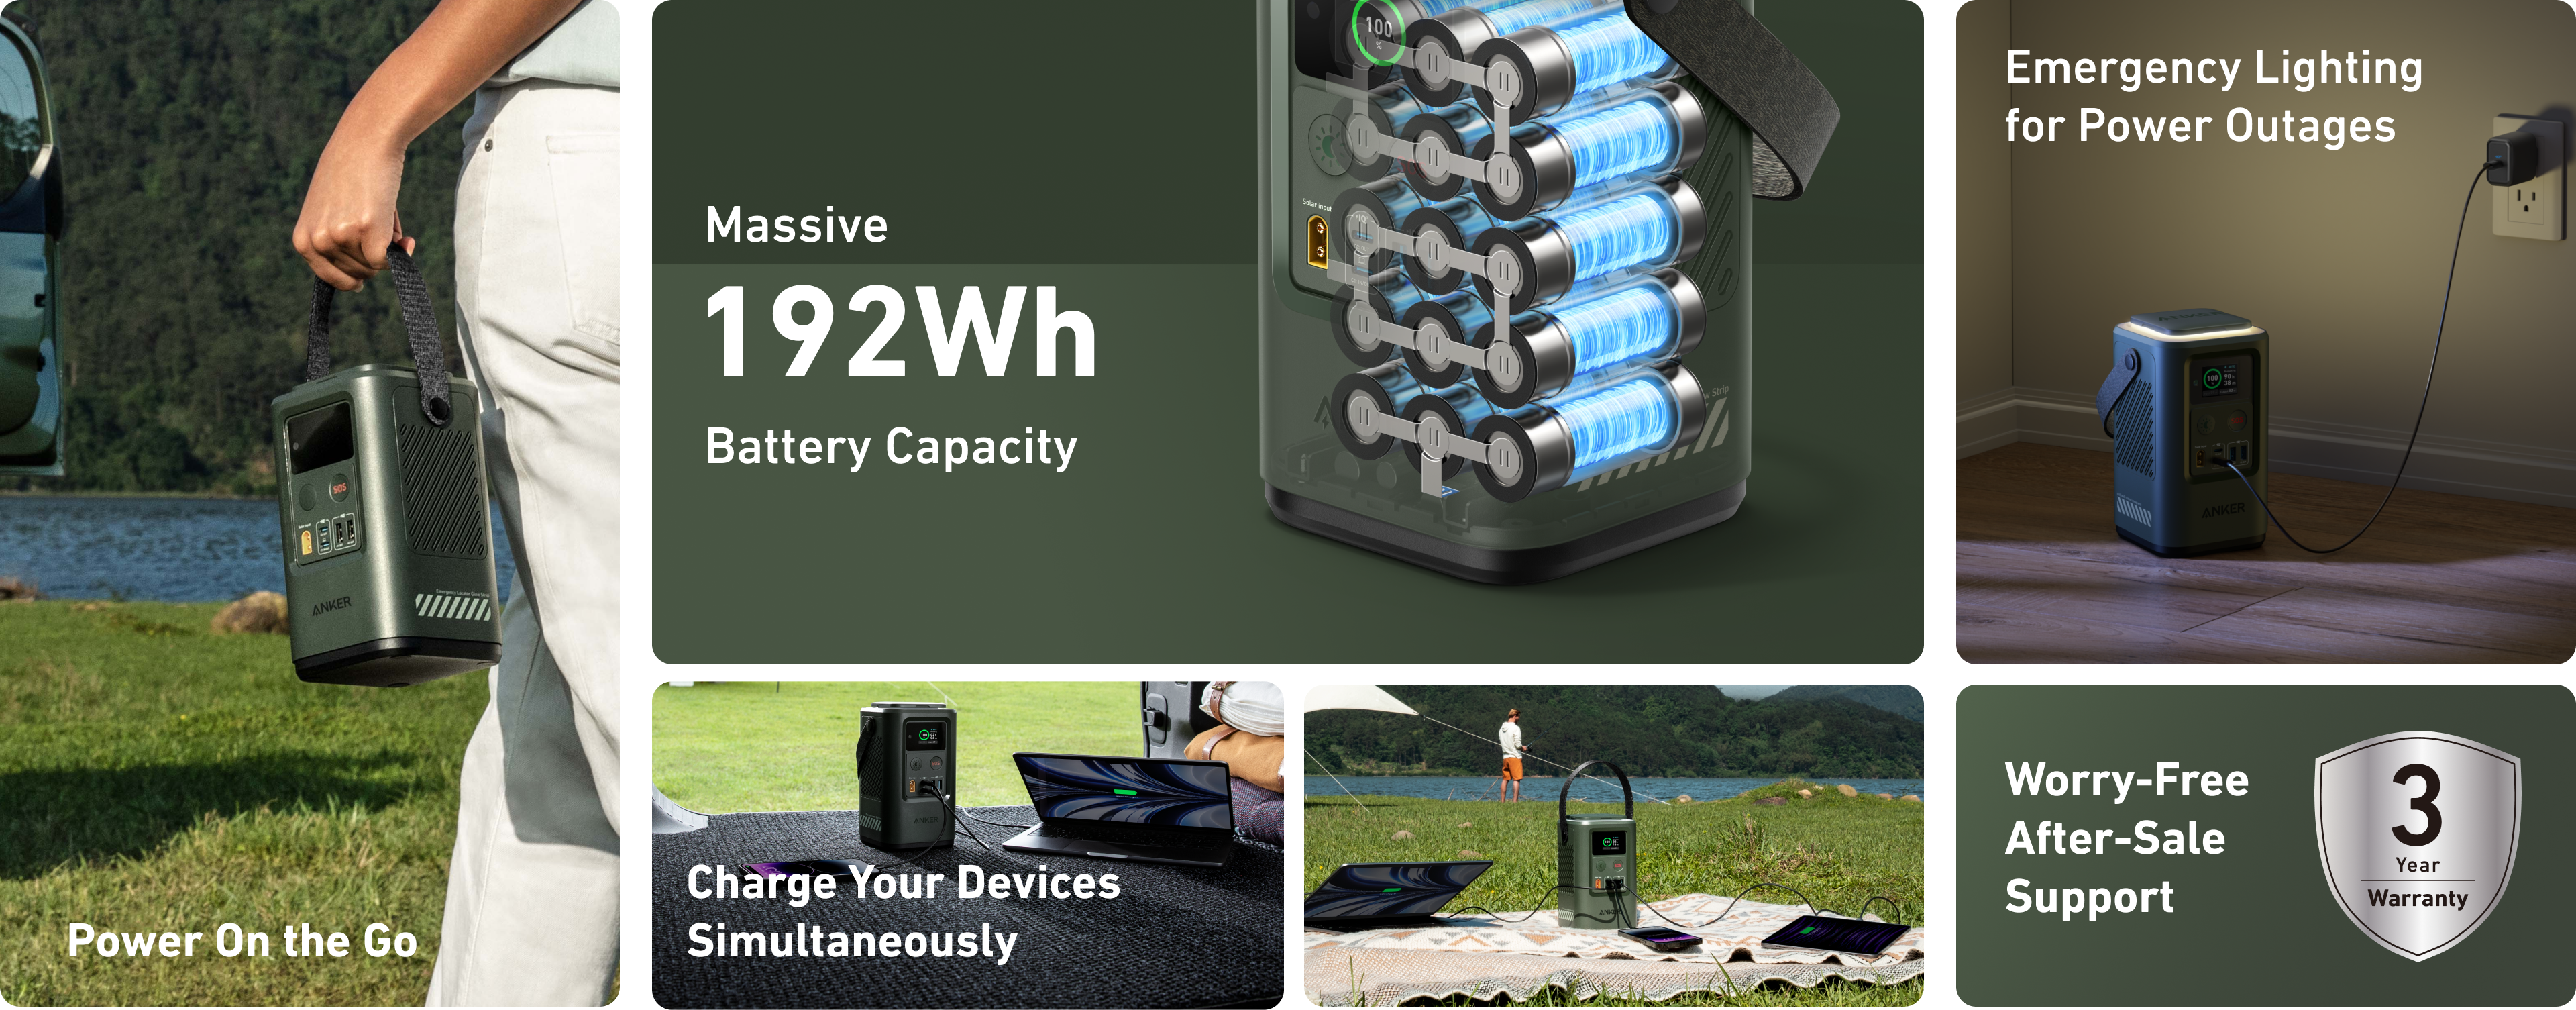 انكر Https://Www.youtube.com/Watch?V=Xxip6C3Ne94
&Lt;Ul&Gt;&Lt;Li&Gt;&Lt;Strong&Gt;Massive Power For All: &Lt;/Strong&Gt;Get The Ultimate Emergency Power Source For All Your Devices With A Massive Capacity Of 60,000Mah. Charge An Iphone 14 Over 10 Times, A Macbook Air Up To 2.9 Times, Or Power A 3W Led Lamp For 42.3 Hours.&Lt;/Li&Gt;&Lt;Li&Gt;&Lt;Strong&Gt;Simultaneous Charging: &Lt;/Strong&Gt;Features 60W And 27W Usb-C Ports, Allowing You To Charge Your Phone And Laptop Simultaneously—Ideal For Quick Power On The Go.&Lt;/Li&Gt;&Lt;Li&Gt;&Lt;Strong&Gt;Stay Safe And Secure: &Lt;/Strong&Gt;The Retractable Light And An Sos Button Provide Emergency Lighting For Safety During Power Outages Or Other Emergency Situations.&Lt;/Li&Gt;&Lt;Li&Gt;&Lt;Strong&Gt;Power Up Sustainably: &Lt;/Strong&Gt;Recharge The Power Bank Seamlessly Via Solar Panels, Providing Sustainable Charging For Your Devices On The Go.&Lt;/Li&Gt;&Lt;/Ul&Gt; انكر 548 باور بانك بطارية احتياطية أنكر 548 (احتياطي باور كور 192 واط) 60000 مللي امبير - A1294